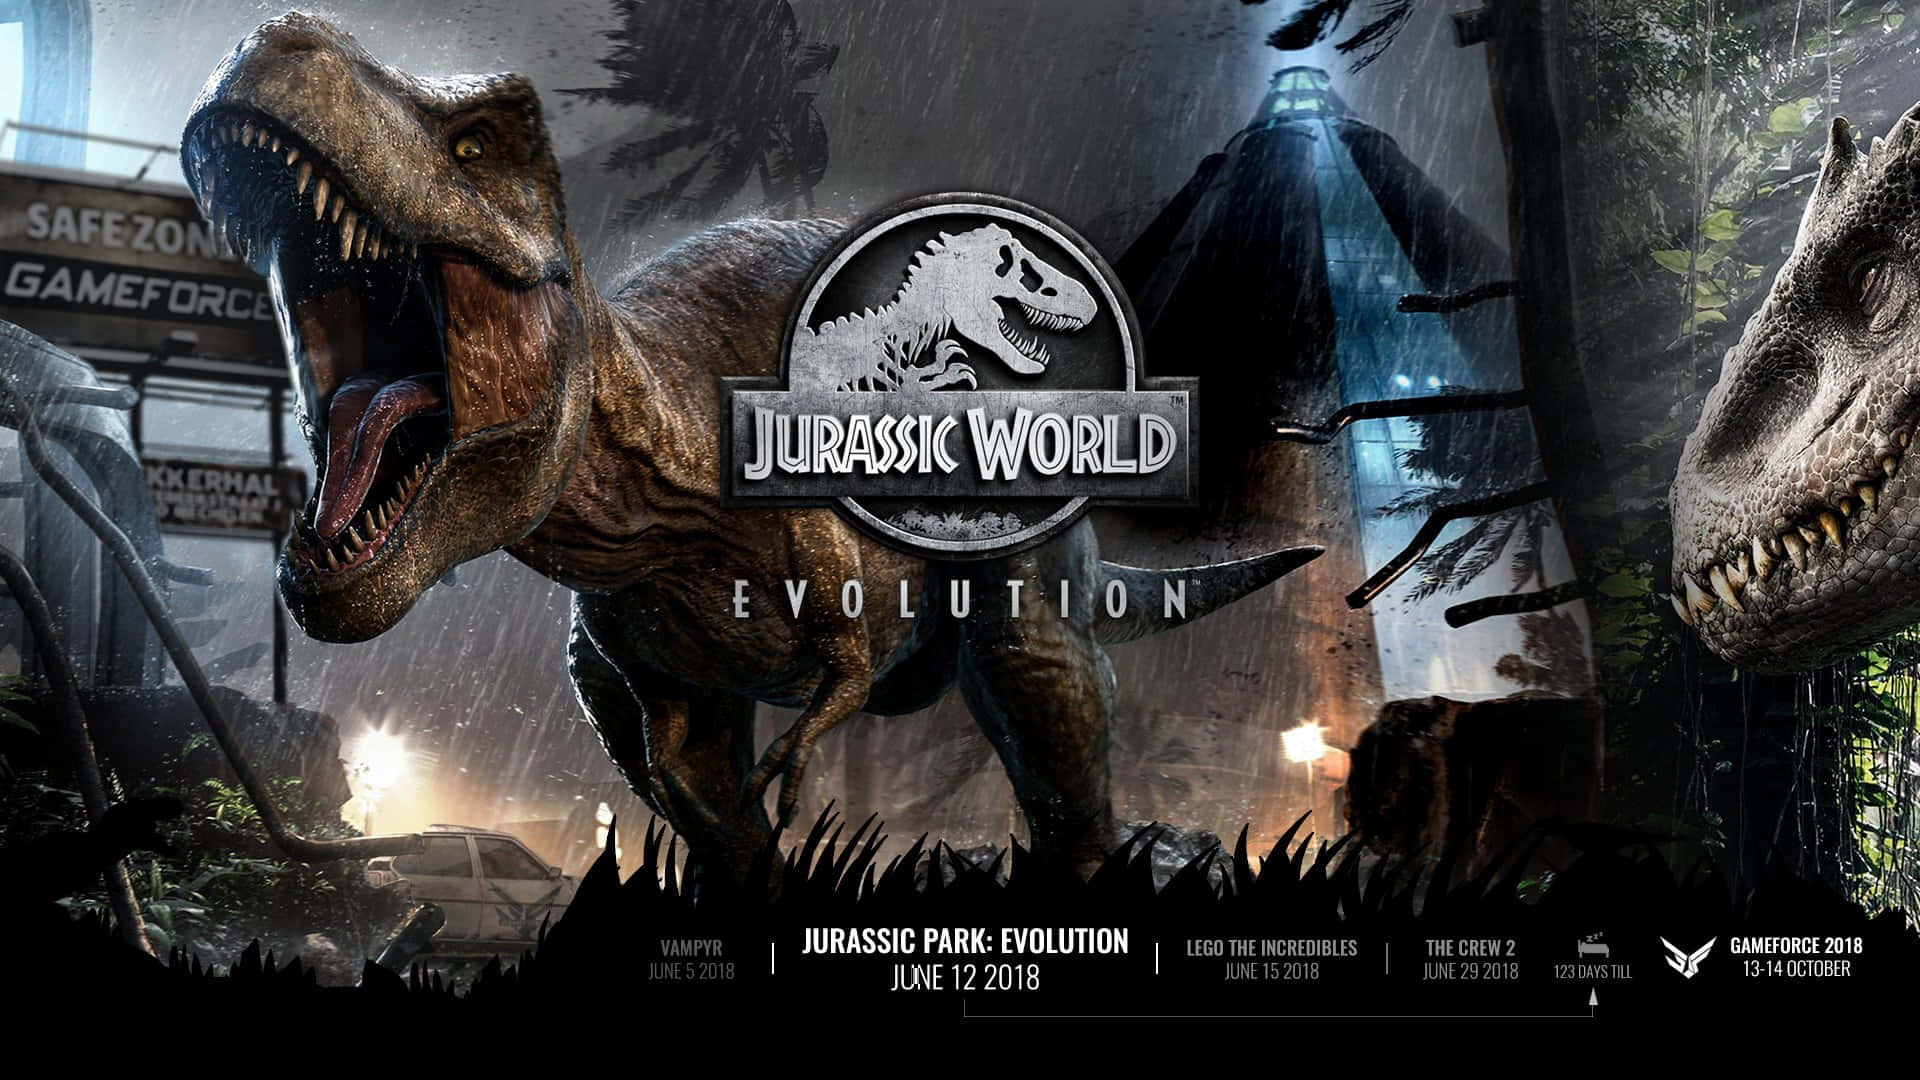 Willkommenin Jurassic World, Wo Das Abenteuer Deines Lebens Auf Dich Wartet!